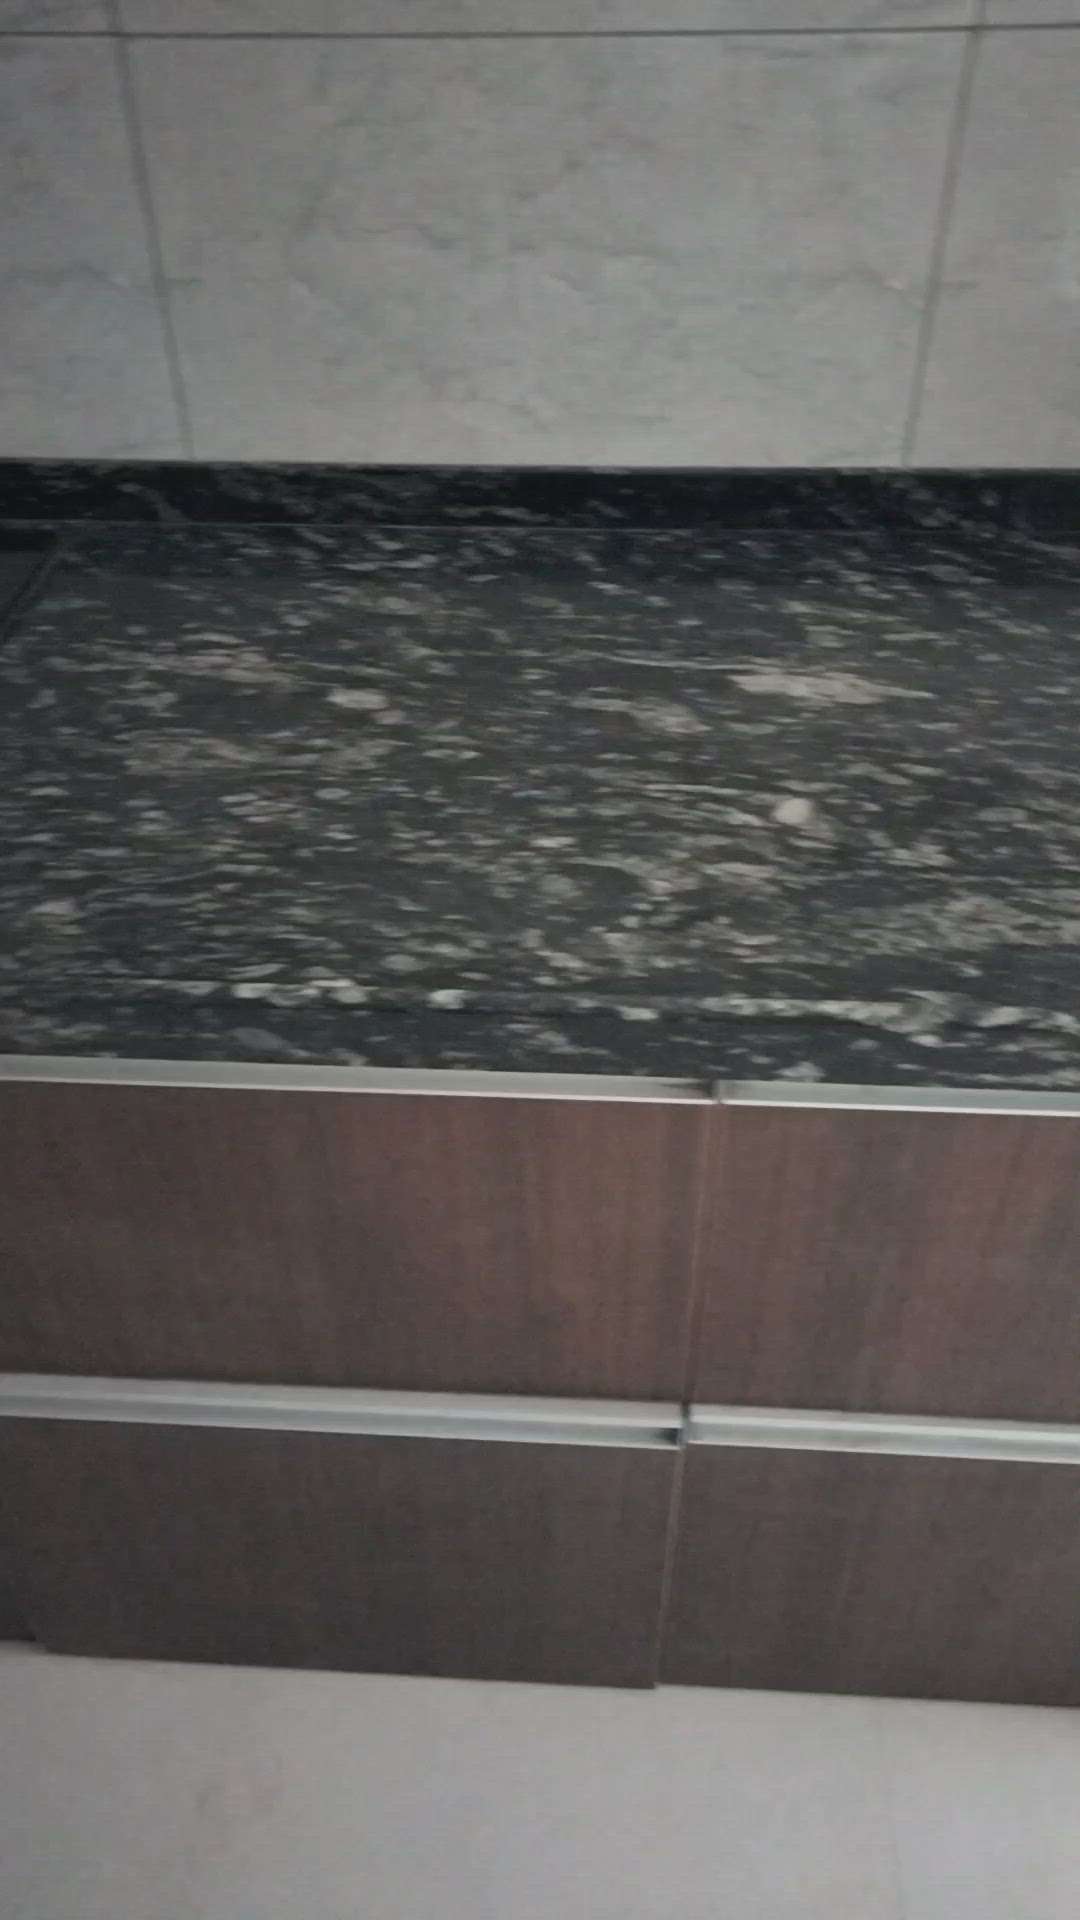 modular kitchen kitchen design granite kitchen wall tiles marble granite kitchen kitchen yr